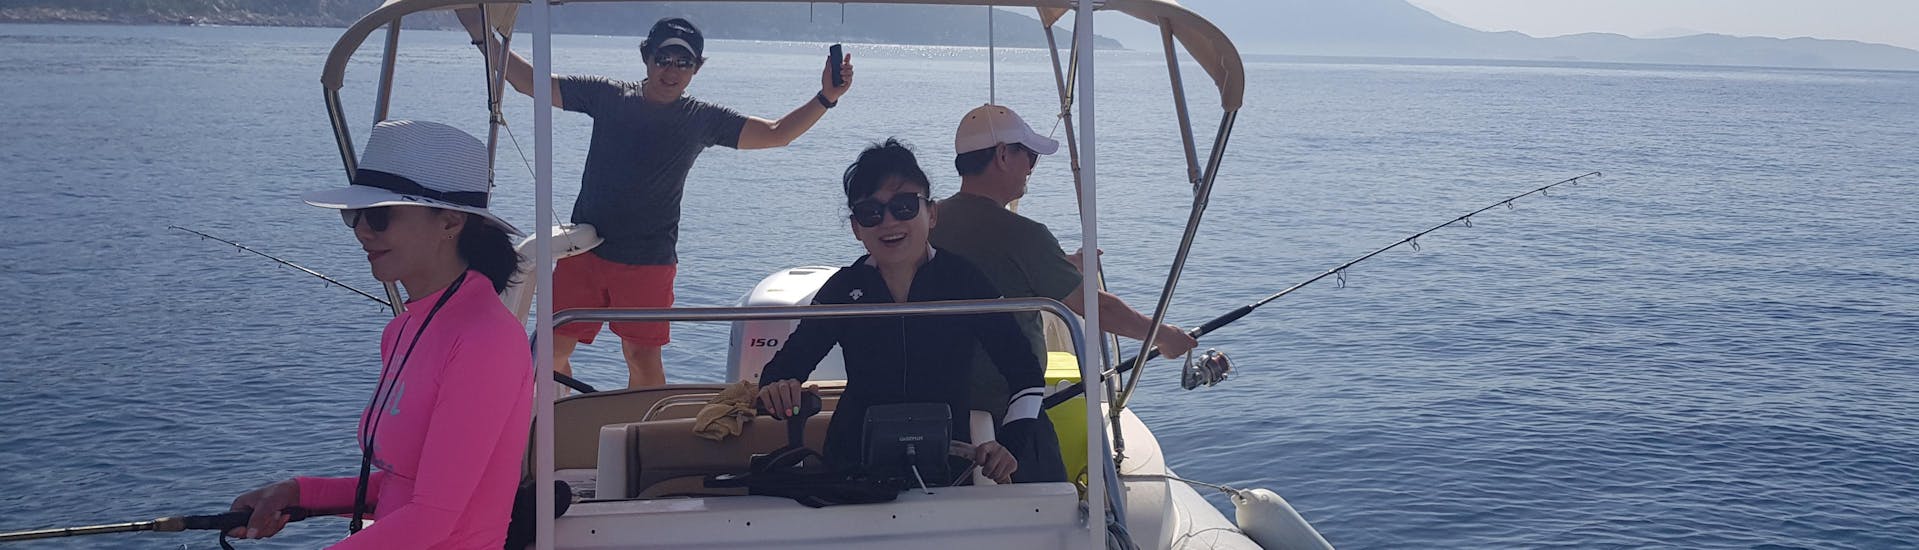 Private Bootstour mit Angeln entlang der Küste von Dubrovnik.